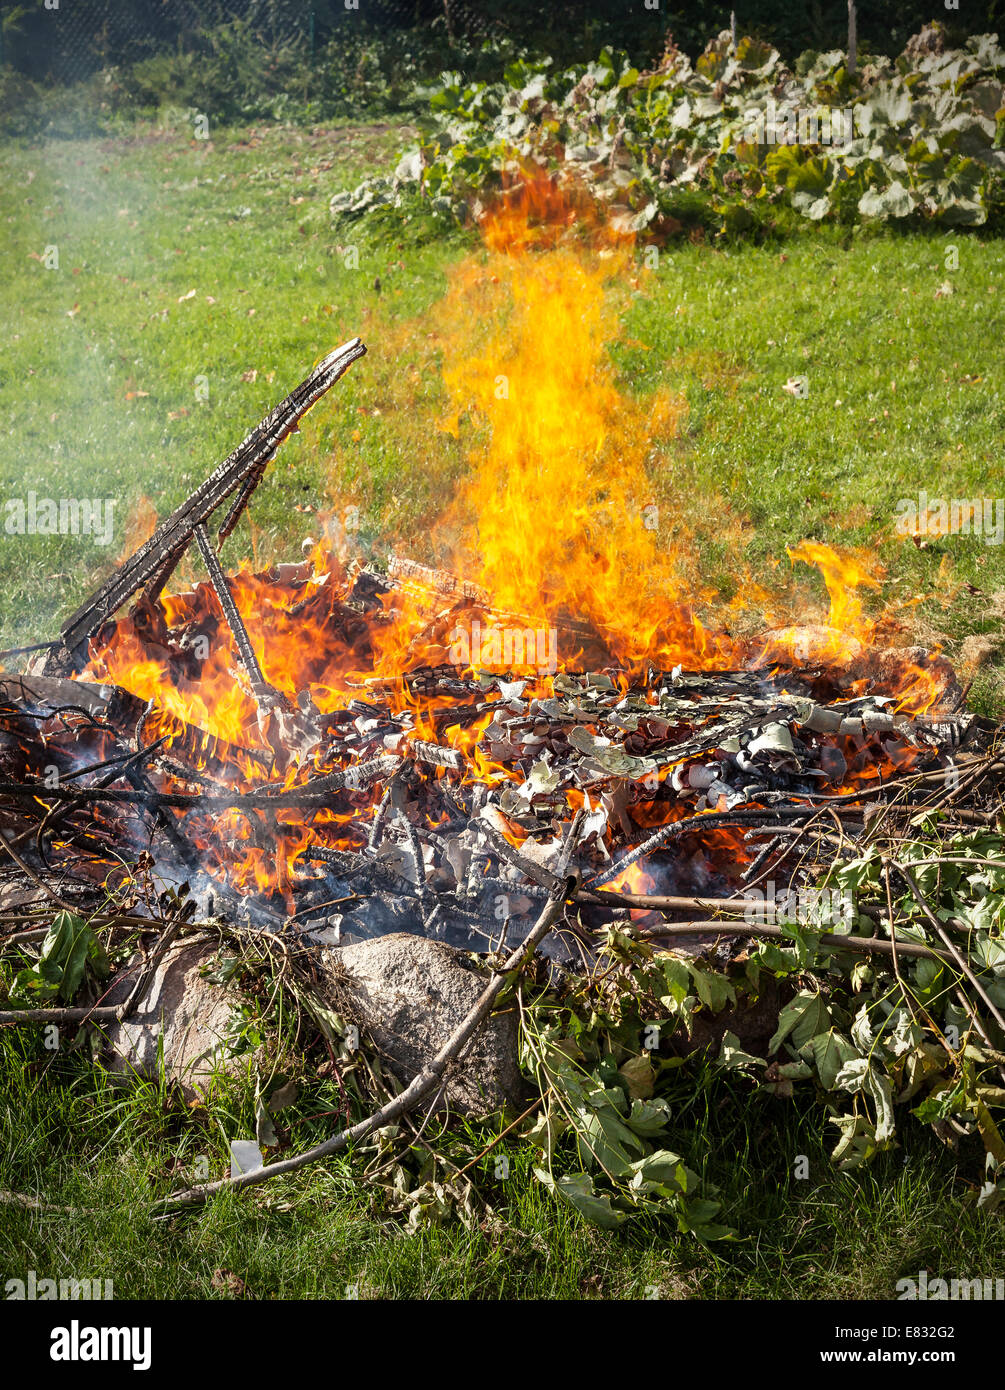 Basura en fuego, jardín ilegal quemar basura. Foto de stock